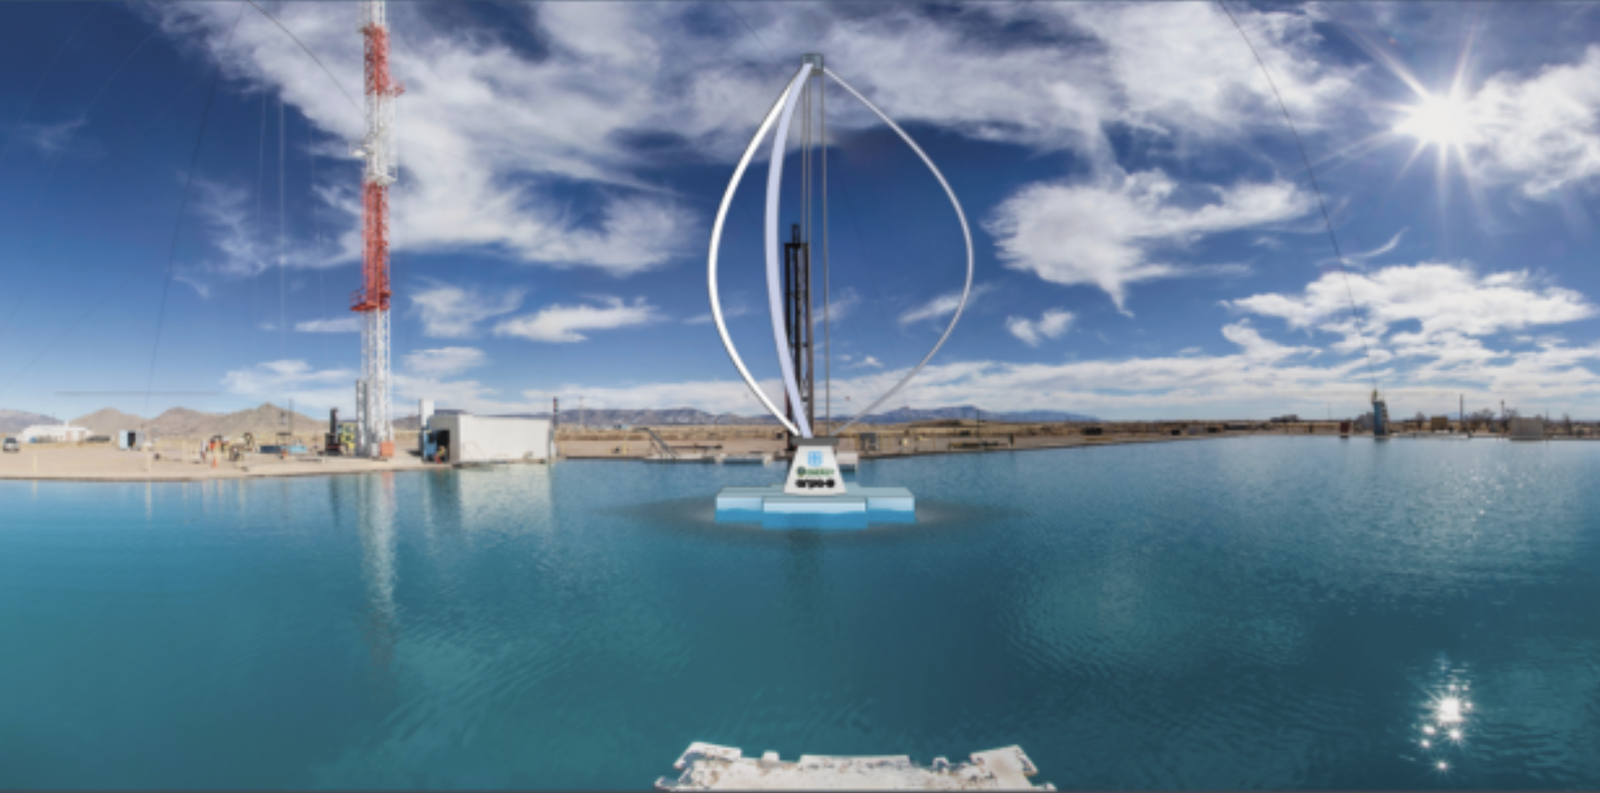 Anında Yüzen Açık Deniz Rüzgar Türbini: Sadece Kuleyi Kaldırın